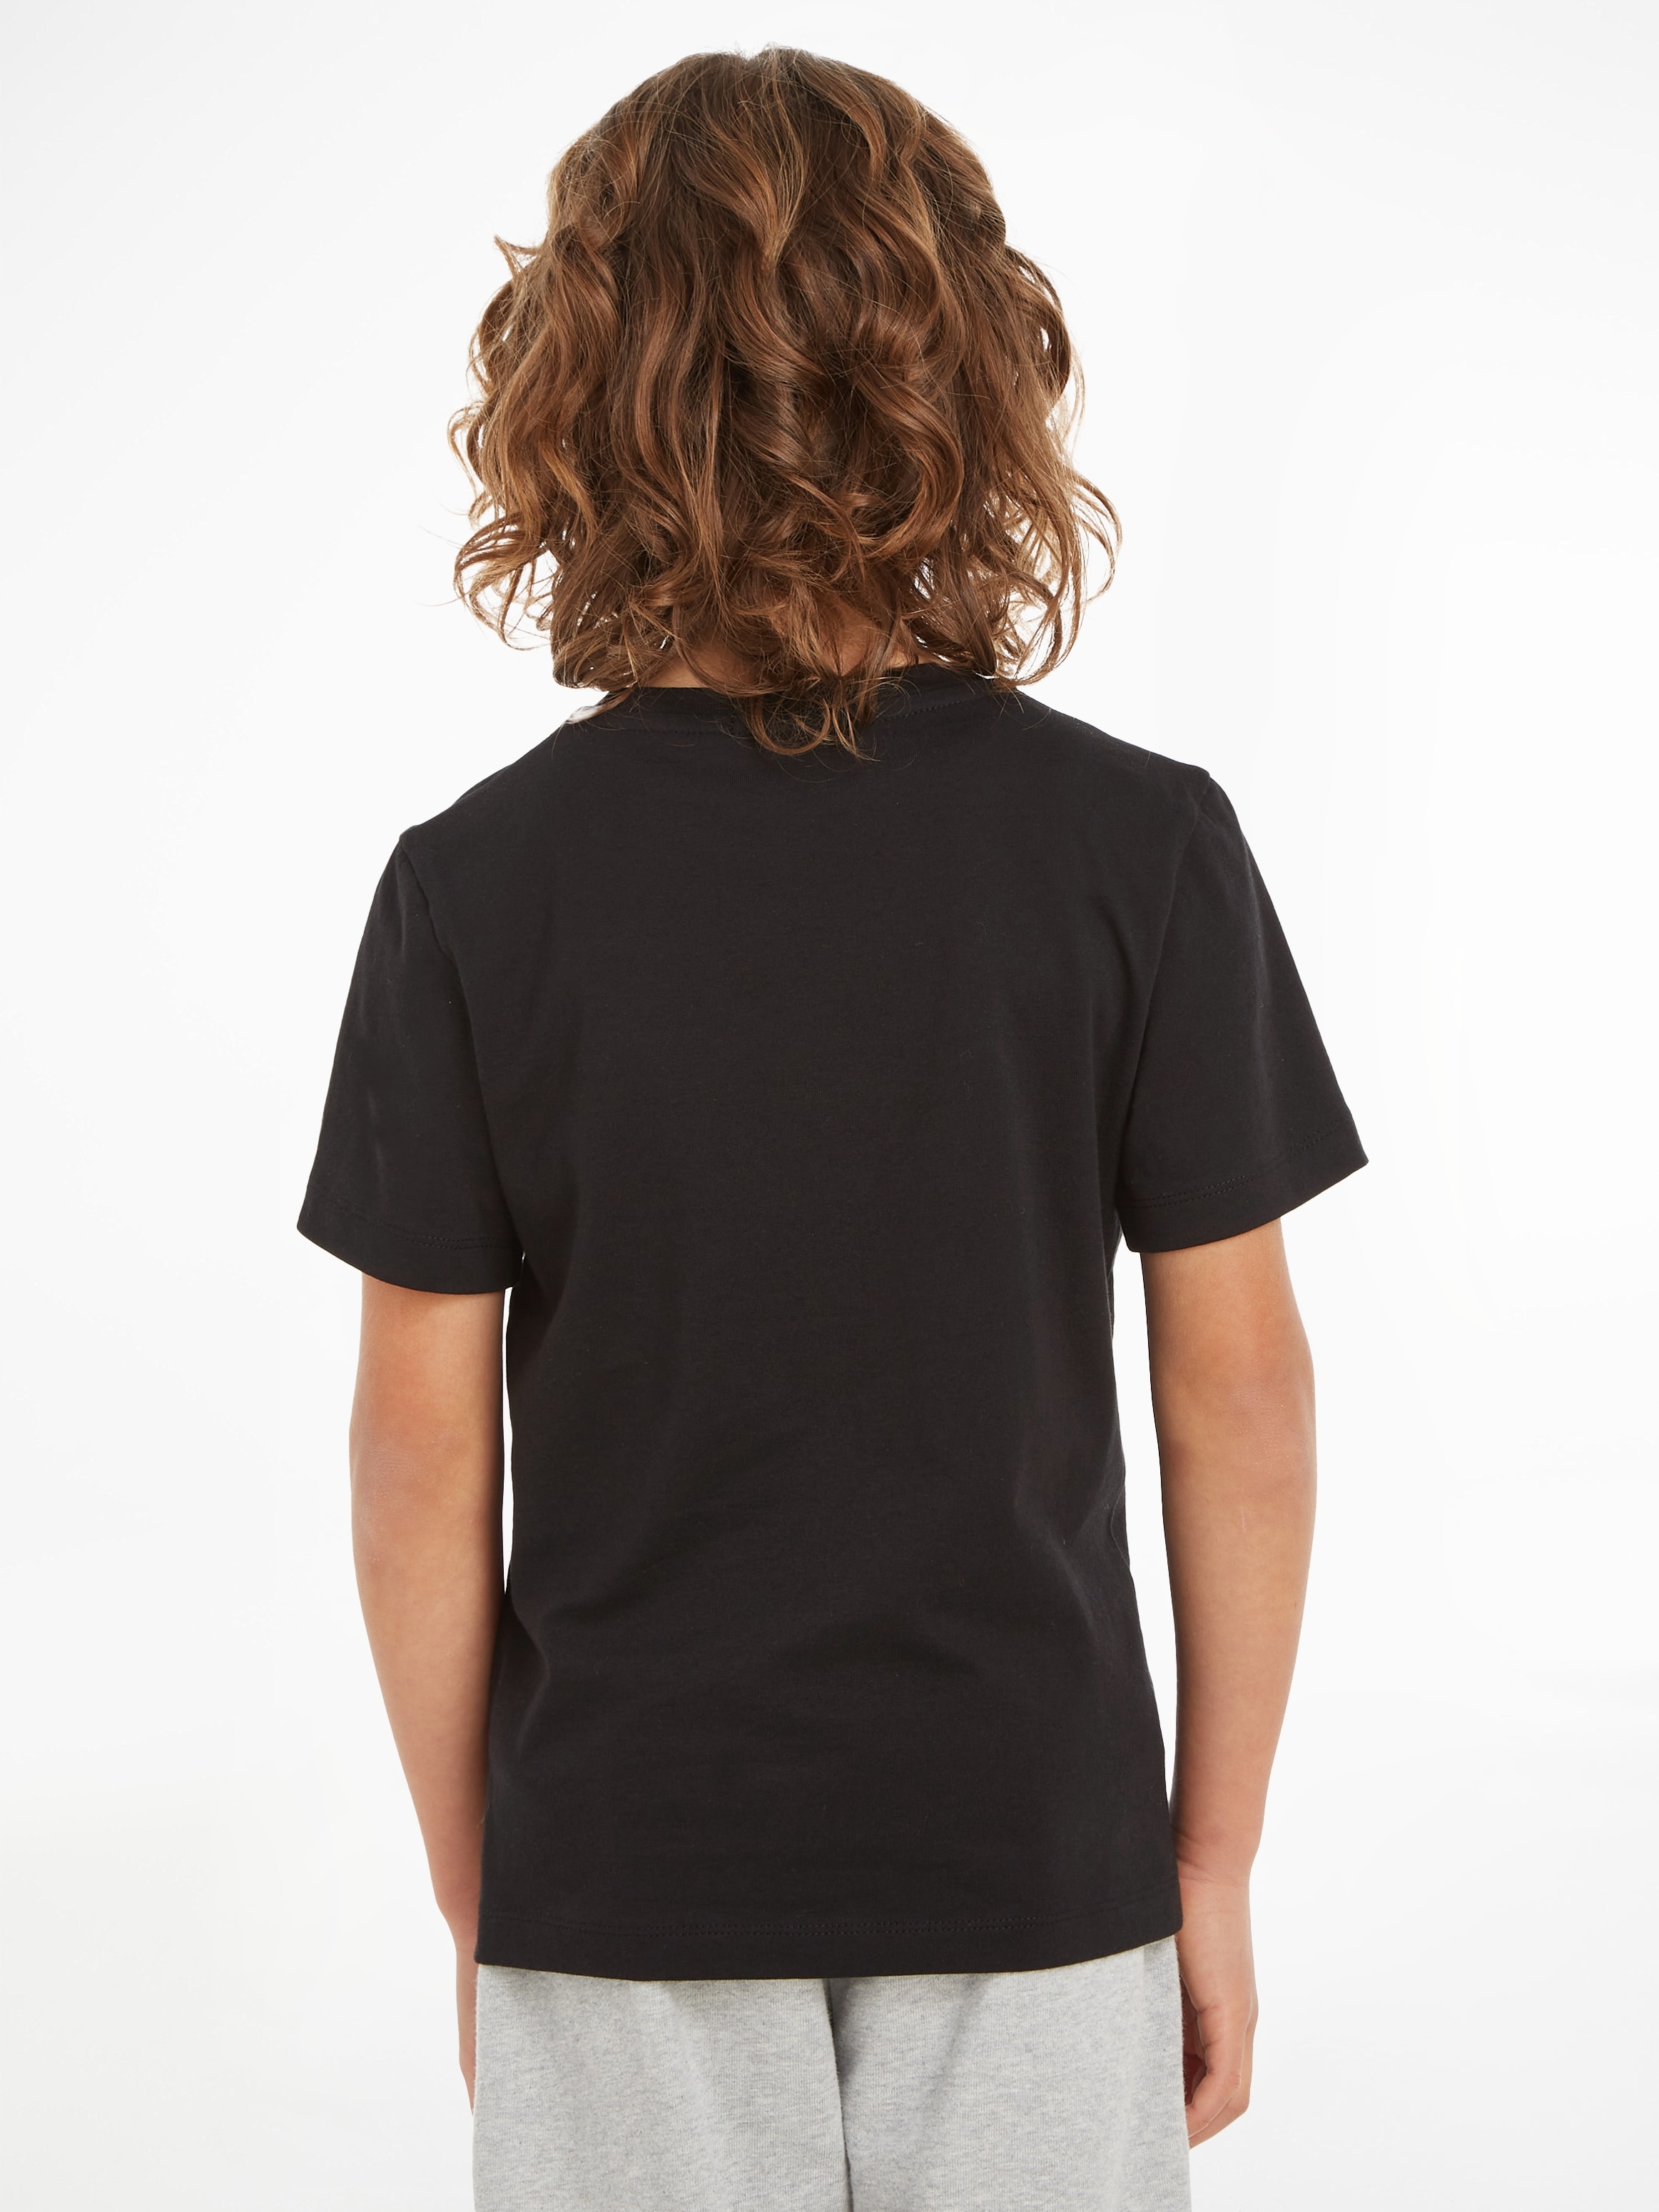 »CHEST T-Shirt TOP« bei Calvin Jeans bestellen OTTO MONOGRAM Klein